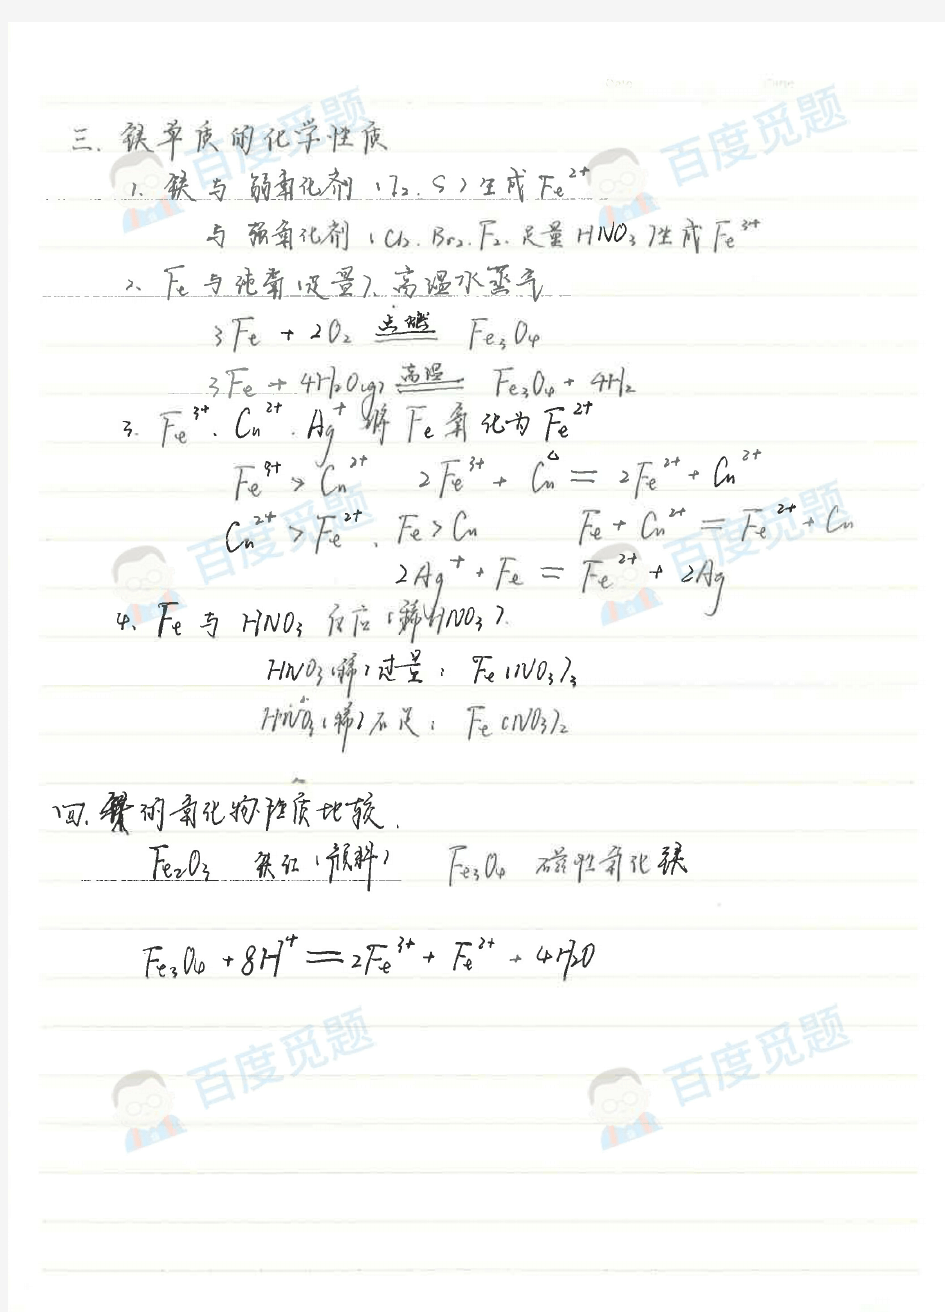 银川一中理科学霸高中化学笔记_铁、铜及其化合物_2015高考状元笔记